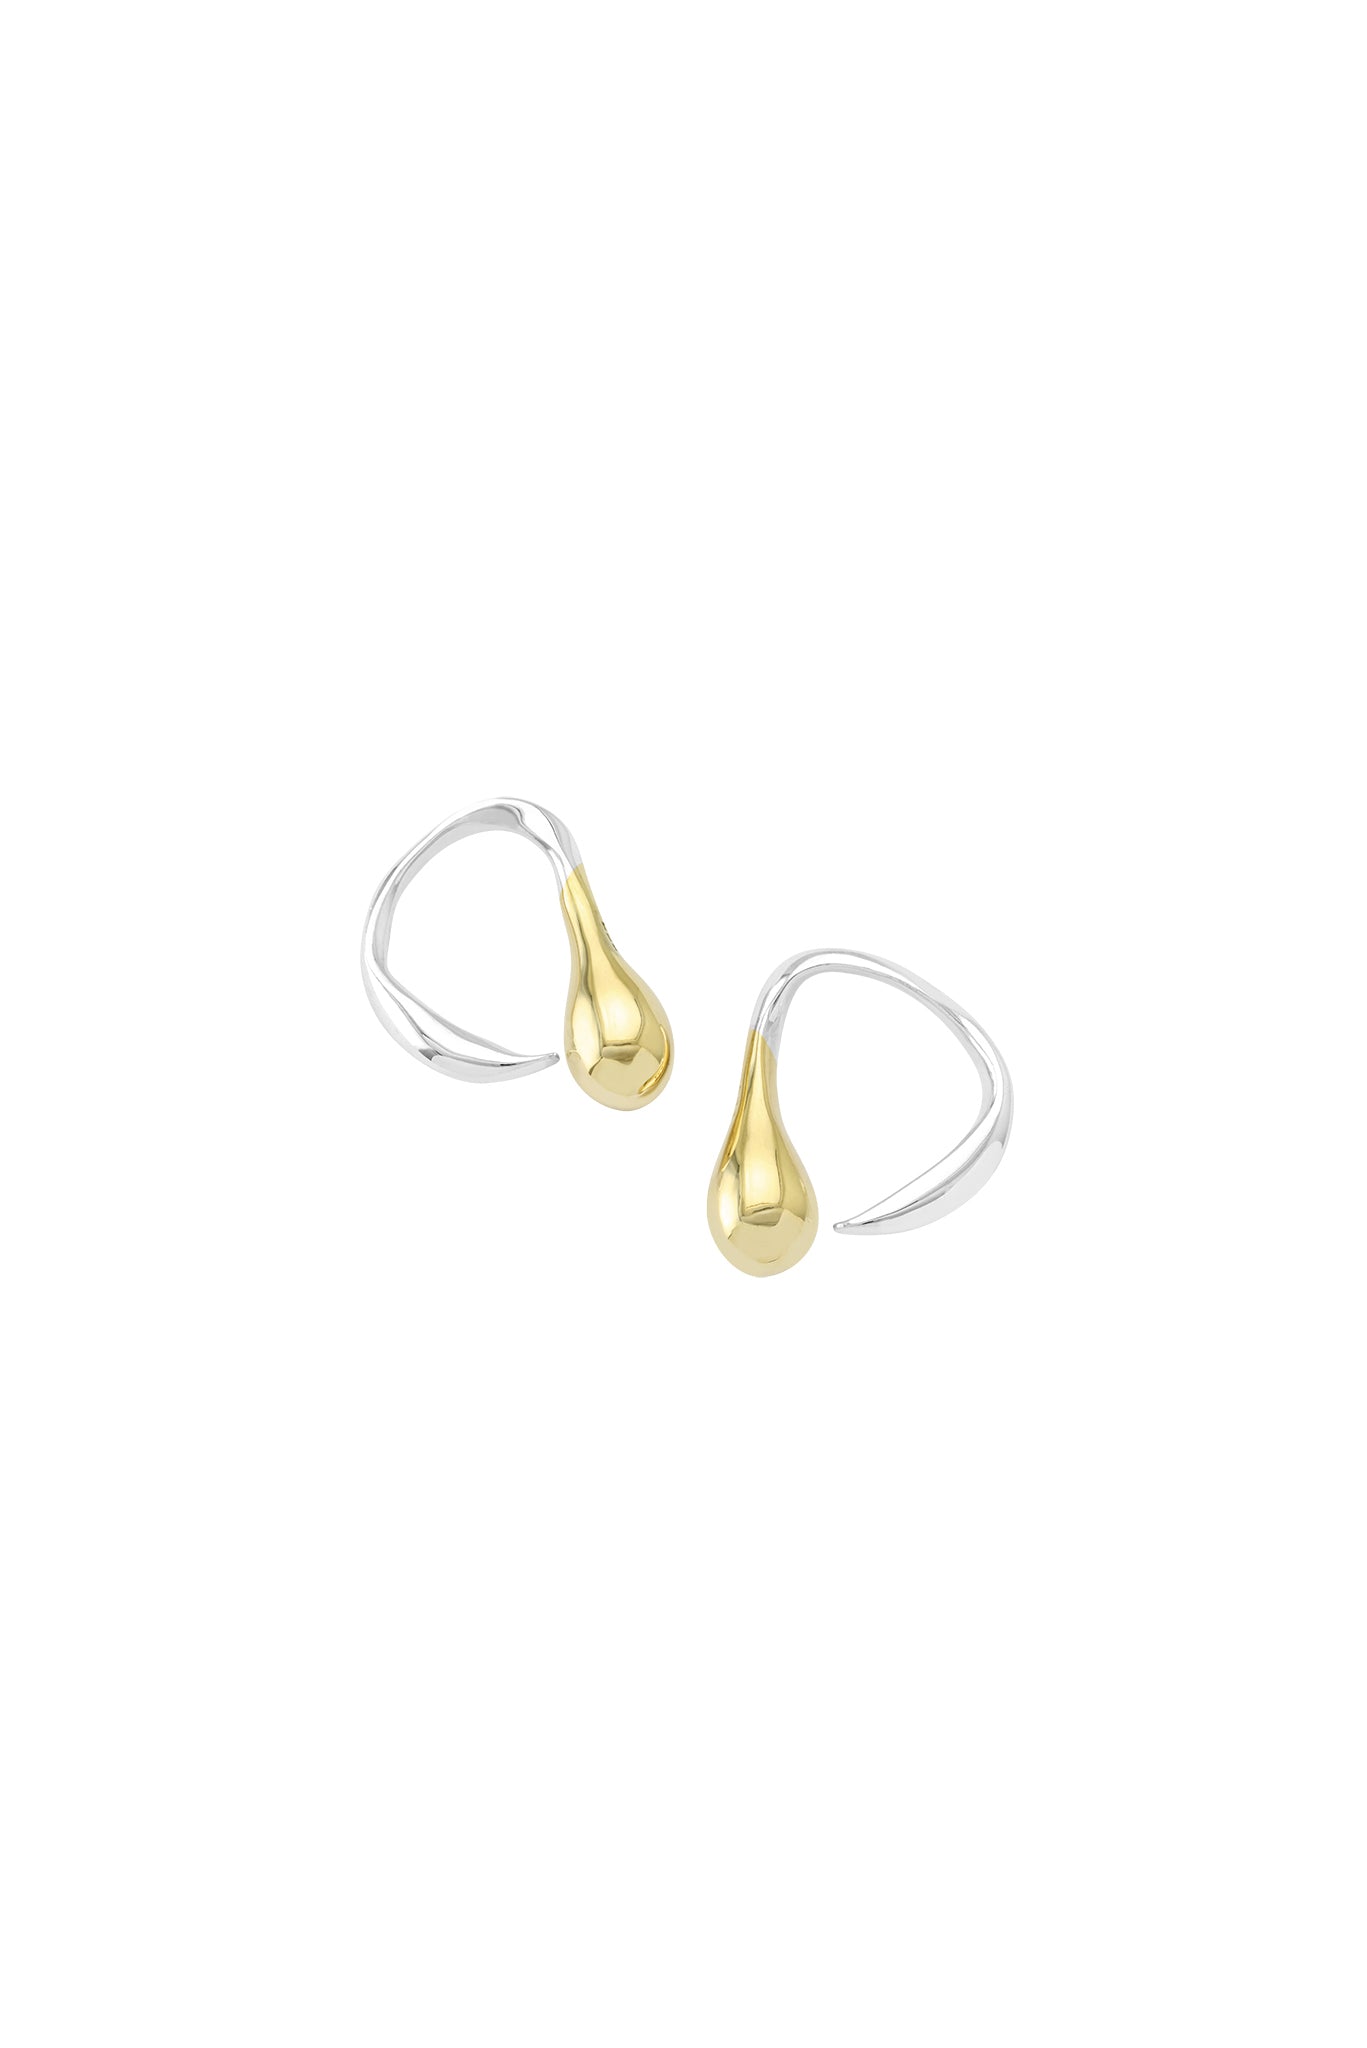 Sporos Twirl Earrings 18k/925